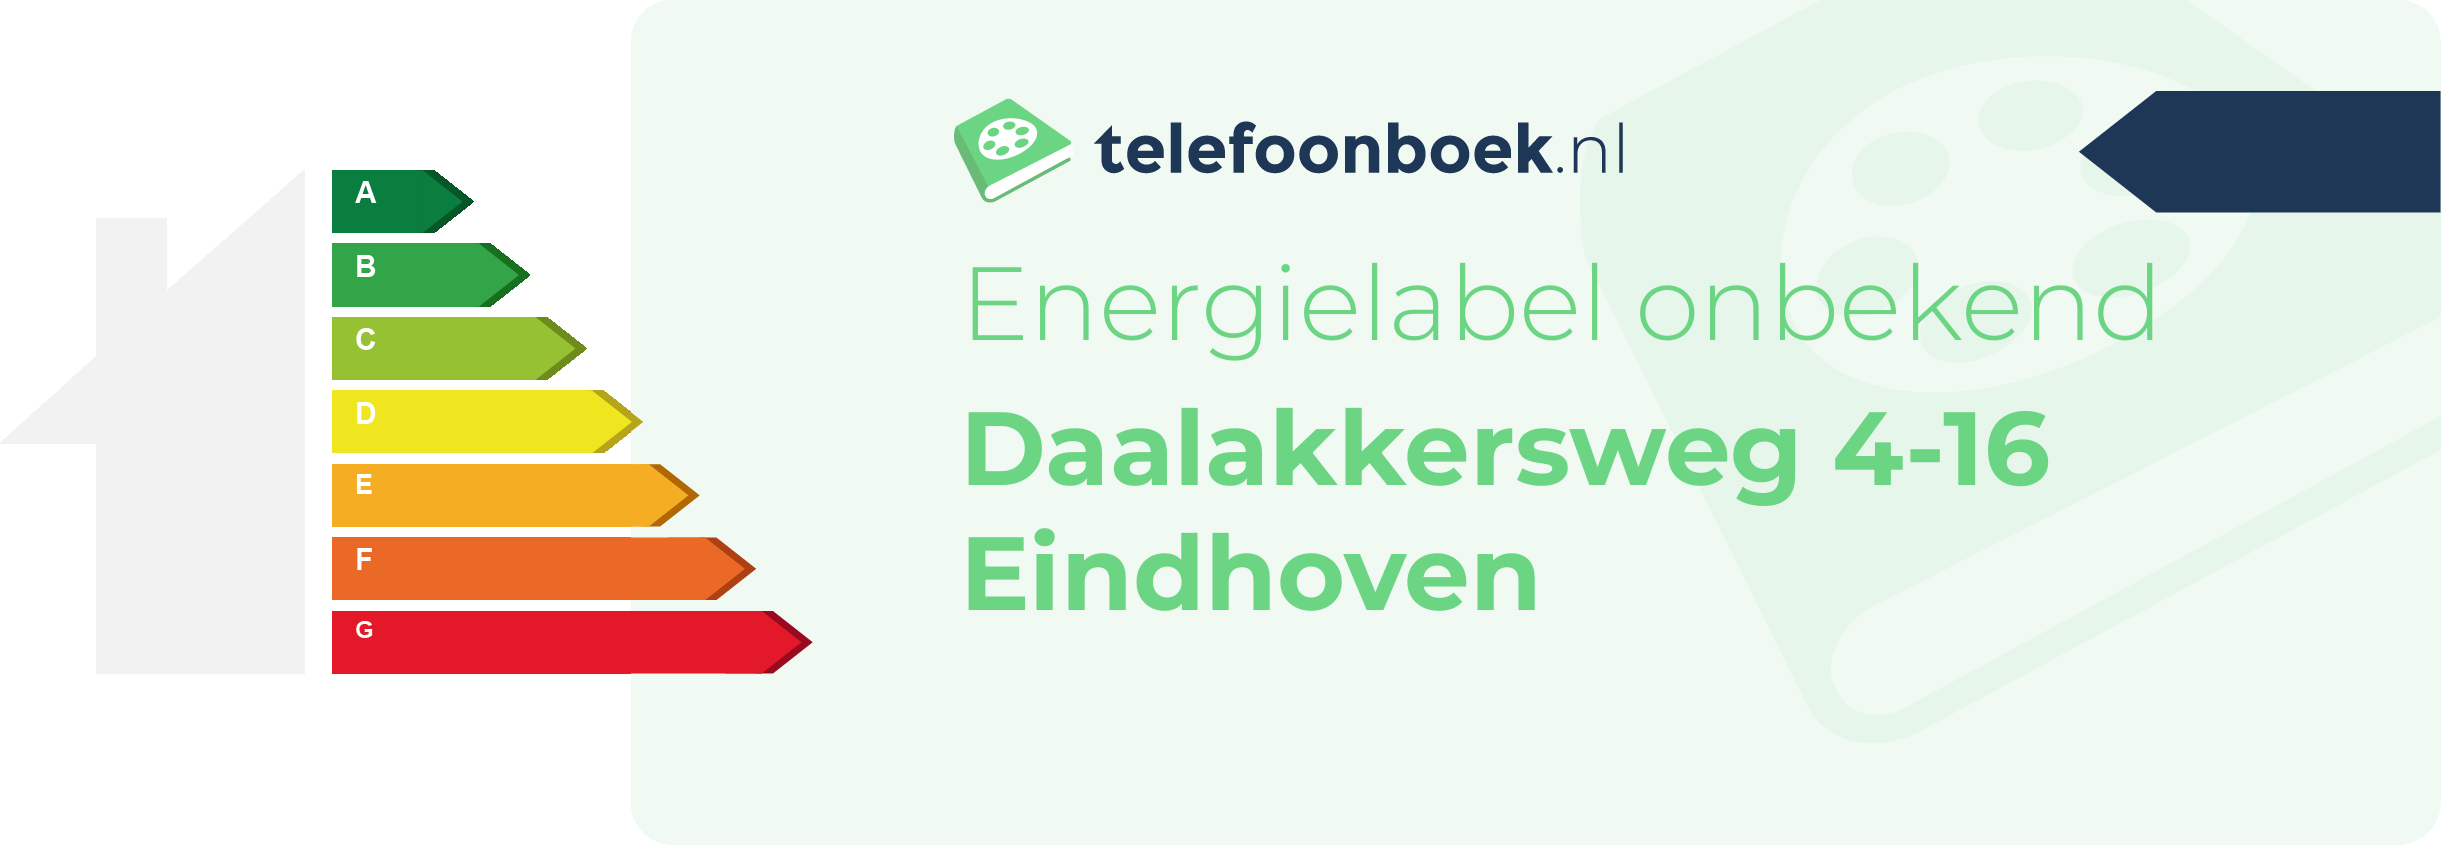 Energielabel Daalakkersweg 4-16 Eindhoven